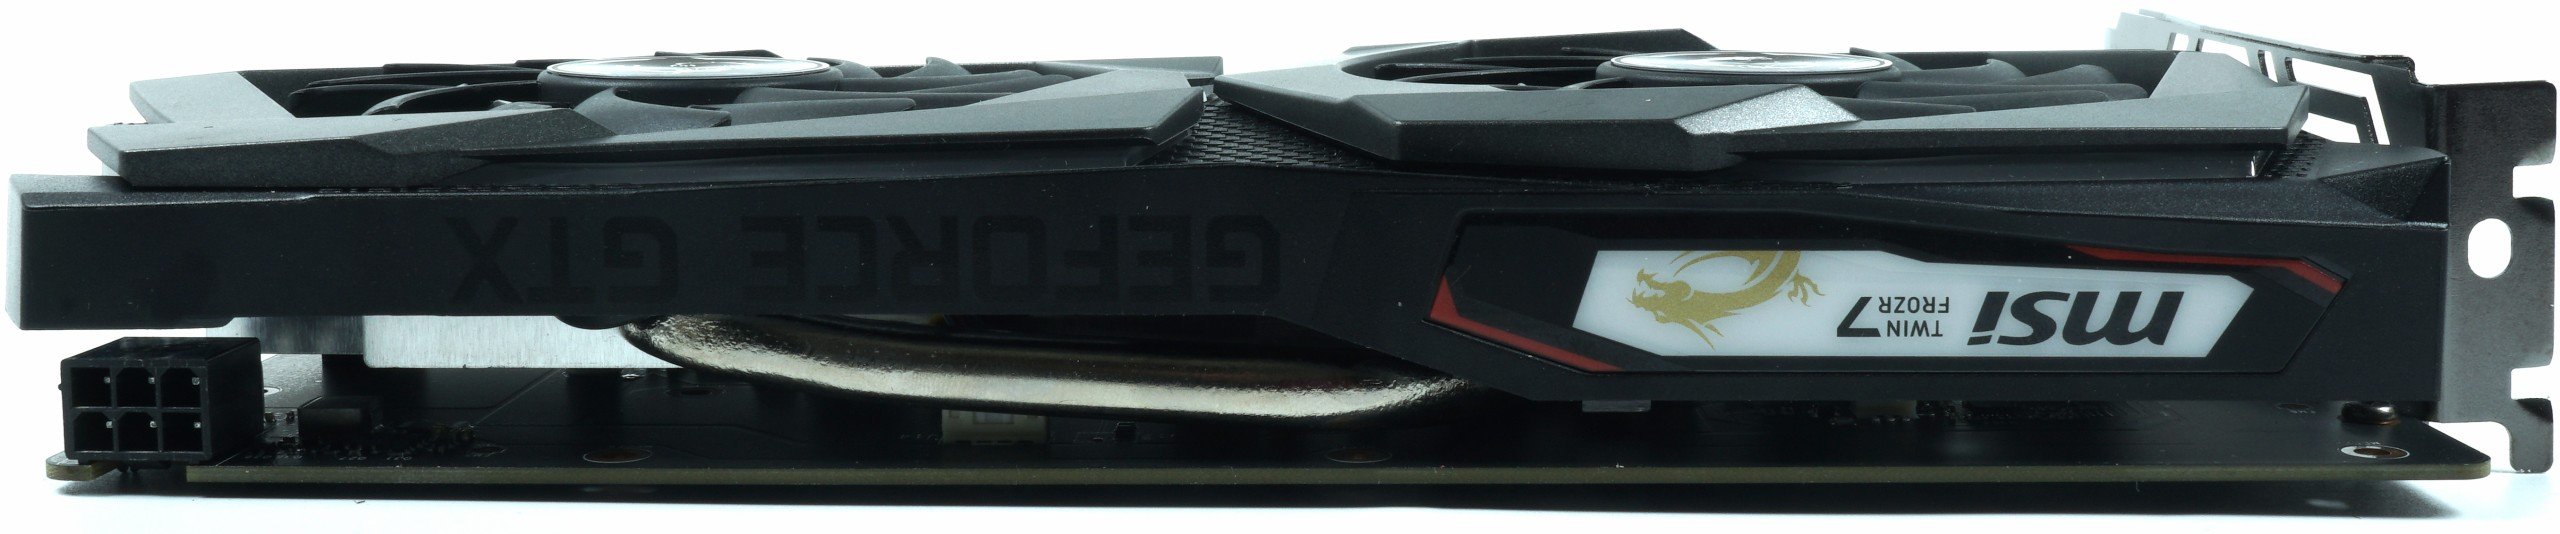 Image 14 : Test : GeForce GTX 1650, le petit Turing galère face à la Radeon RX 570